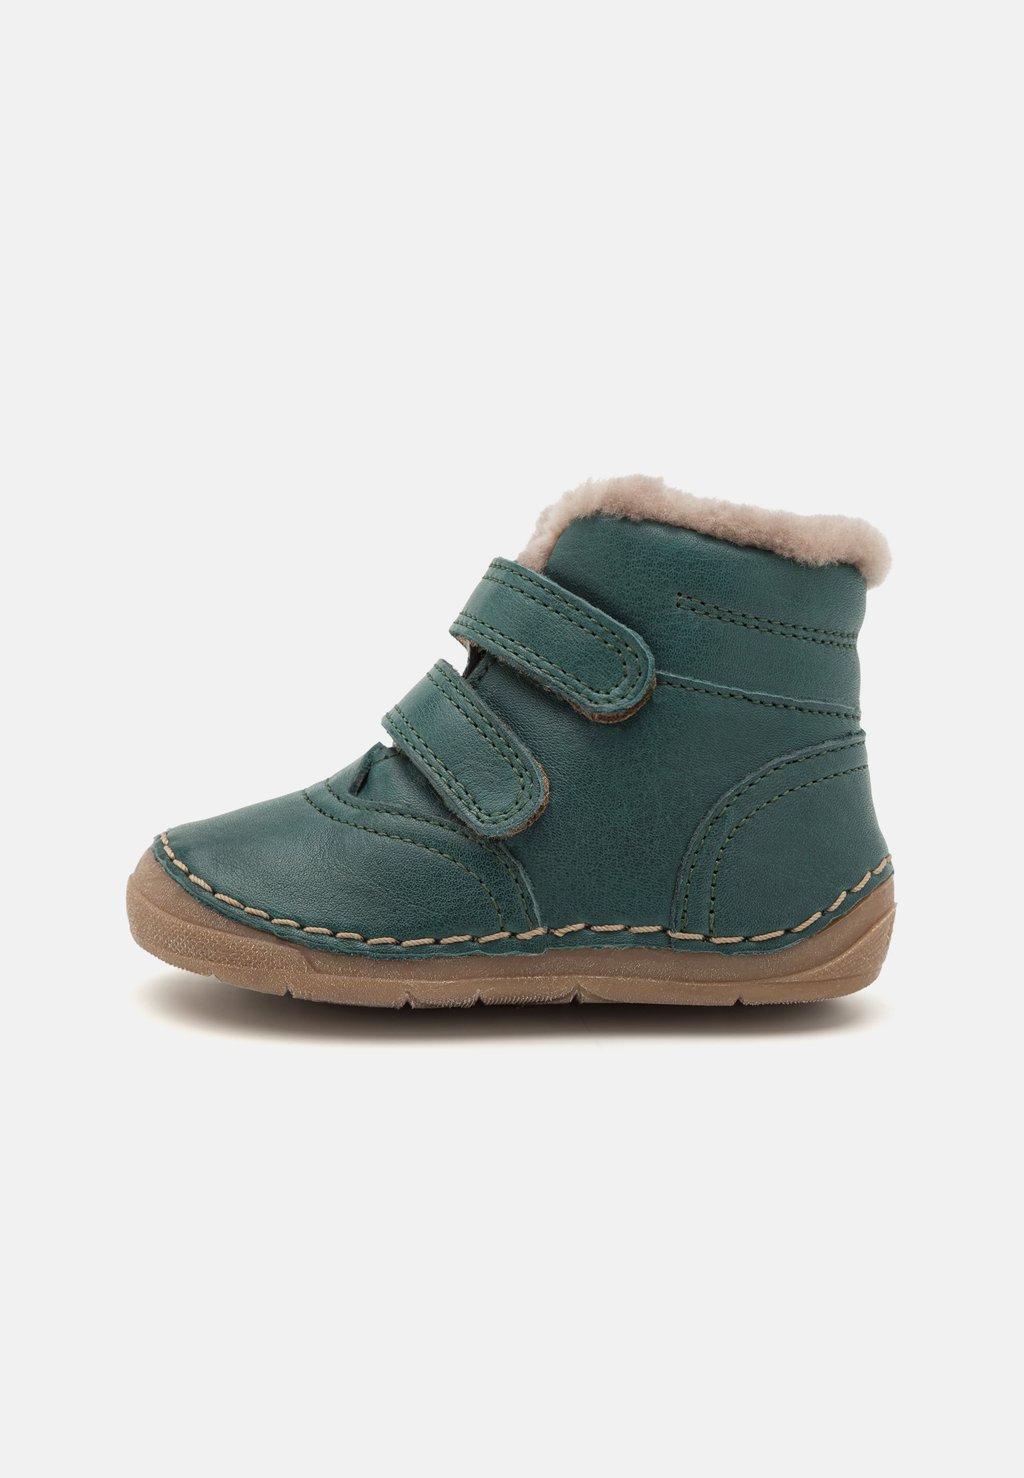 Туфли Первые шаги Paix Winter Unisex Froddo, зеленый туфли первые шаги puma холодный темно серый сверкающий зеленый